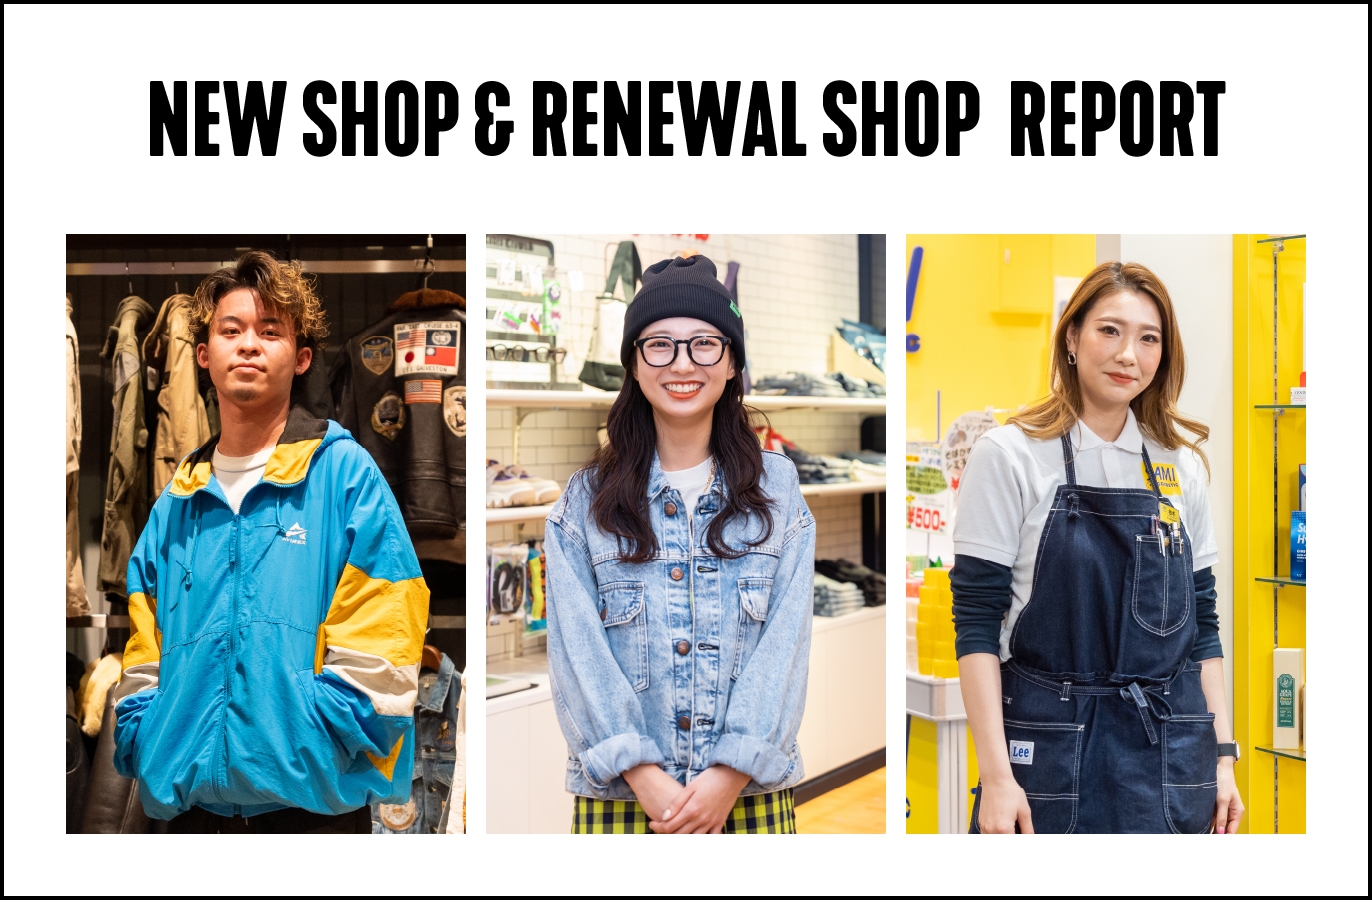 NEW SHOP & RENEWAL SHOP REPORT